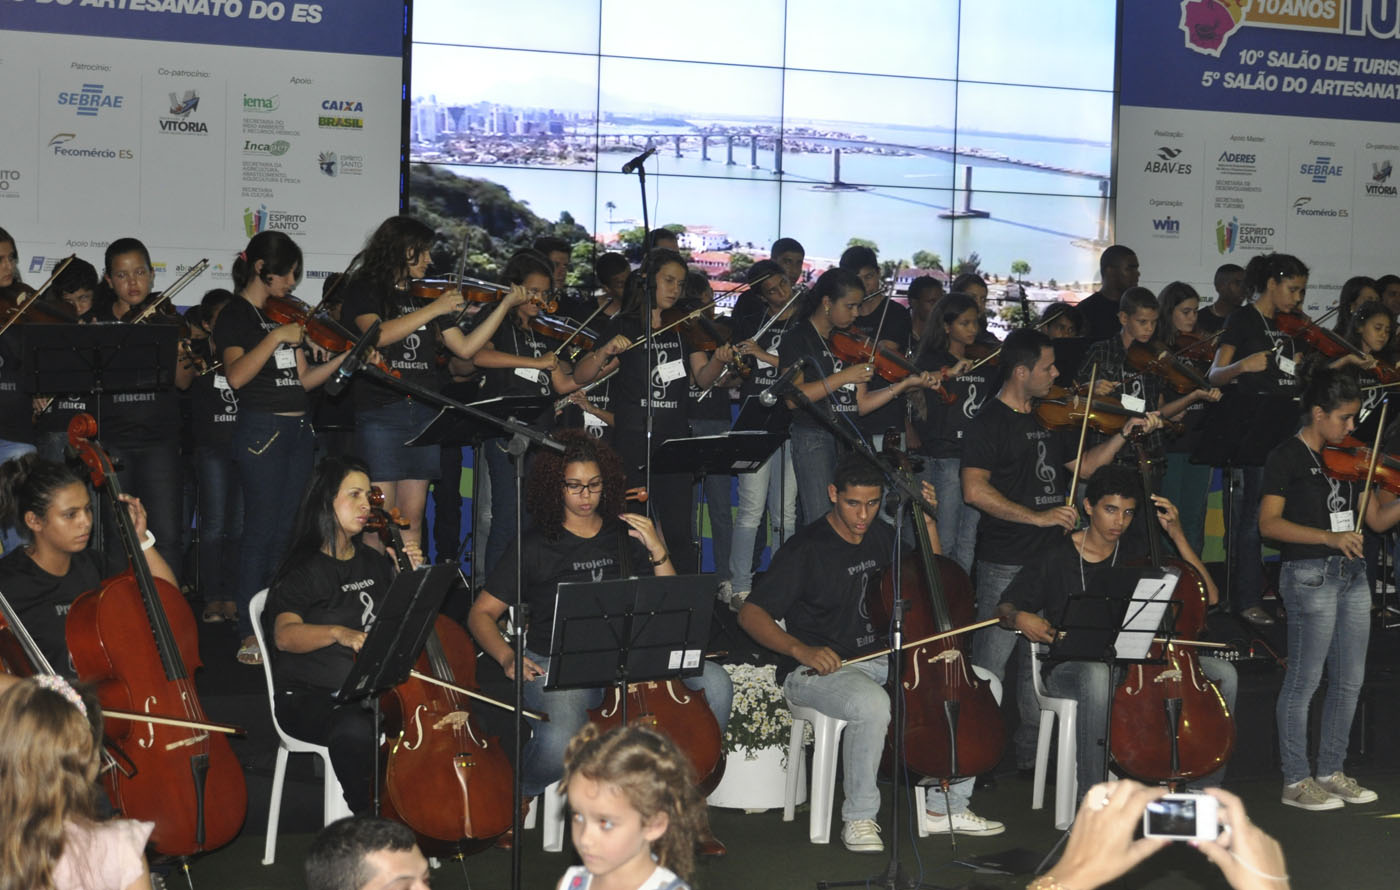 Irupi - Orquestra Som das Águas do Caparaó encanta público na Expotur 2014.